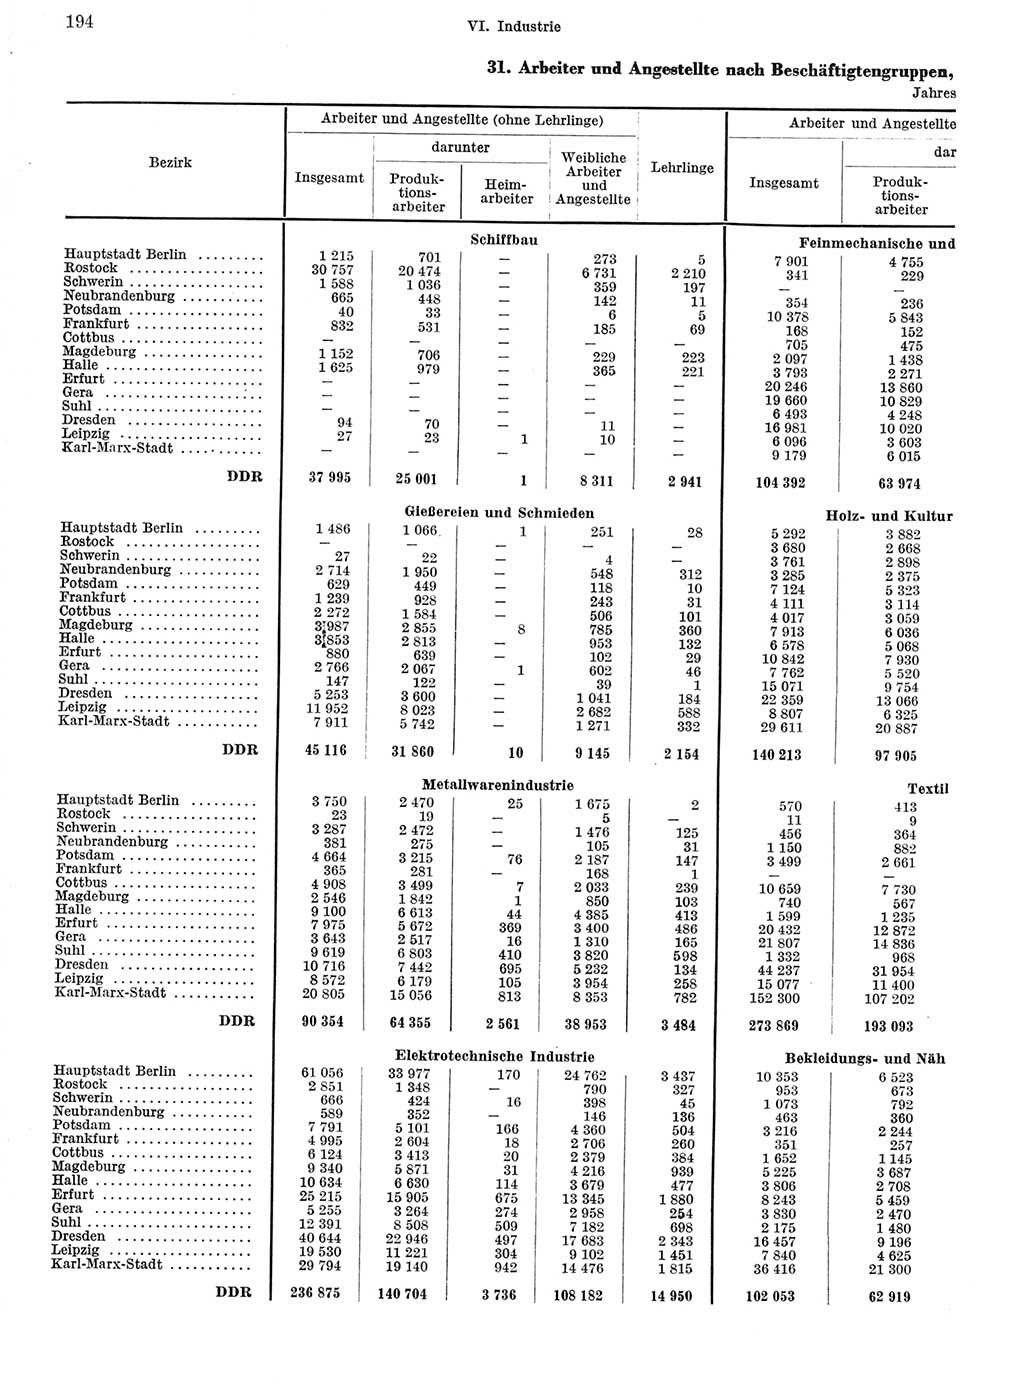 Statistisches Jahrbuch der Deutschen Demokratischen Republik (DDR) 1967, Seite 194 (Stat. Jb. DDR 1967, S. 194)